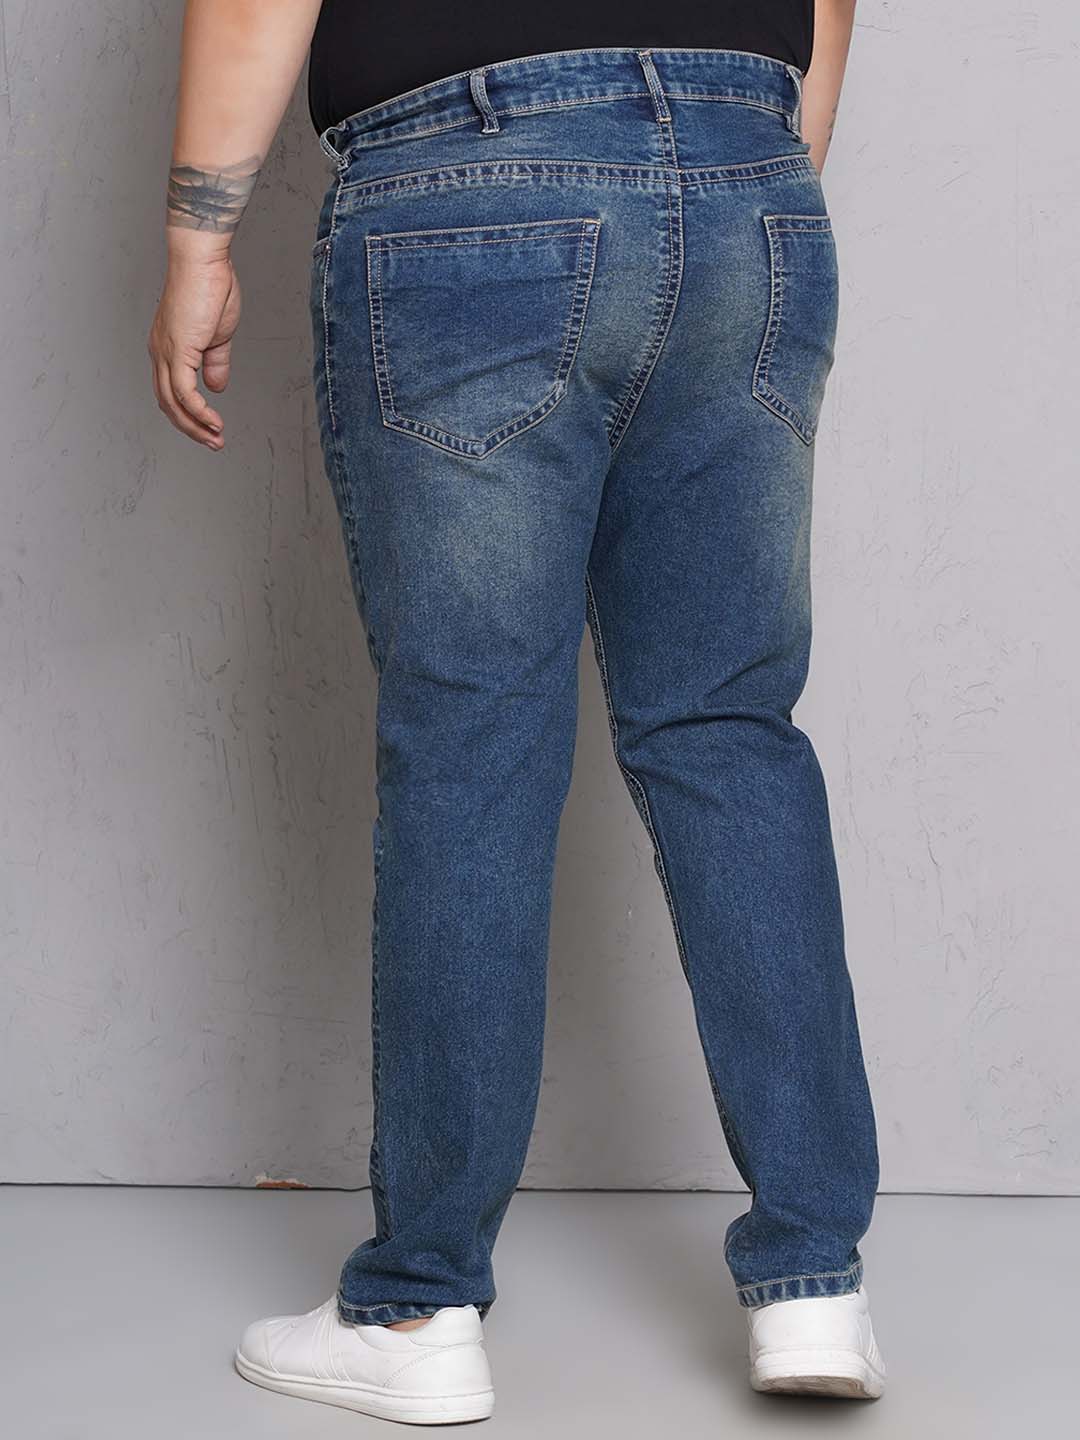 bottomwear/jeans/EJPJ25147/ejpj25147-5.jpg